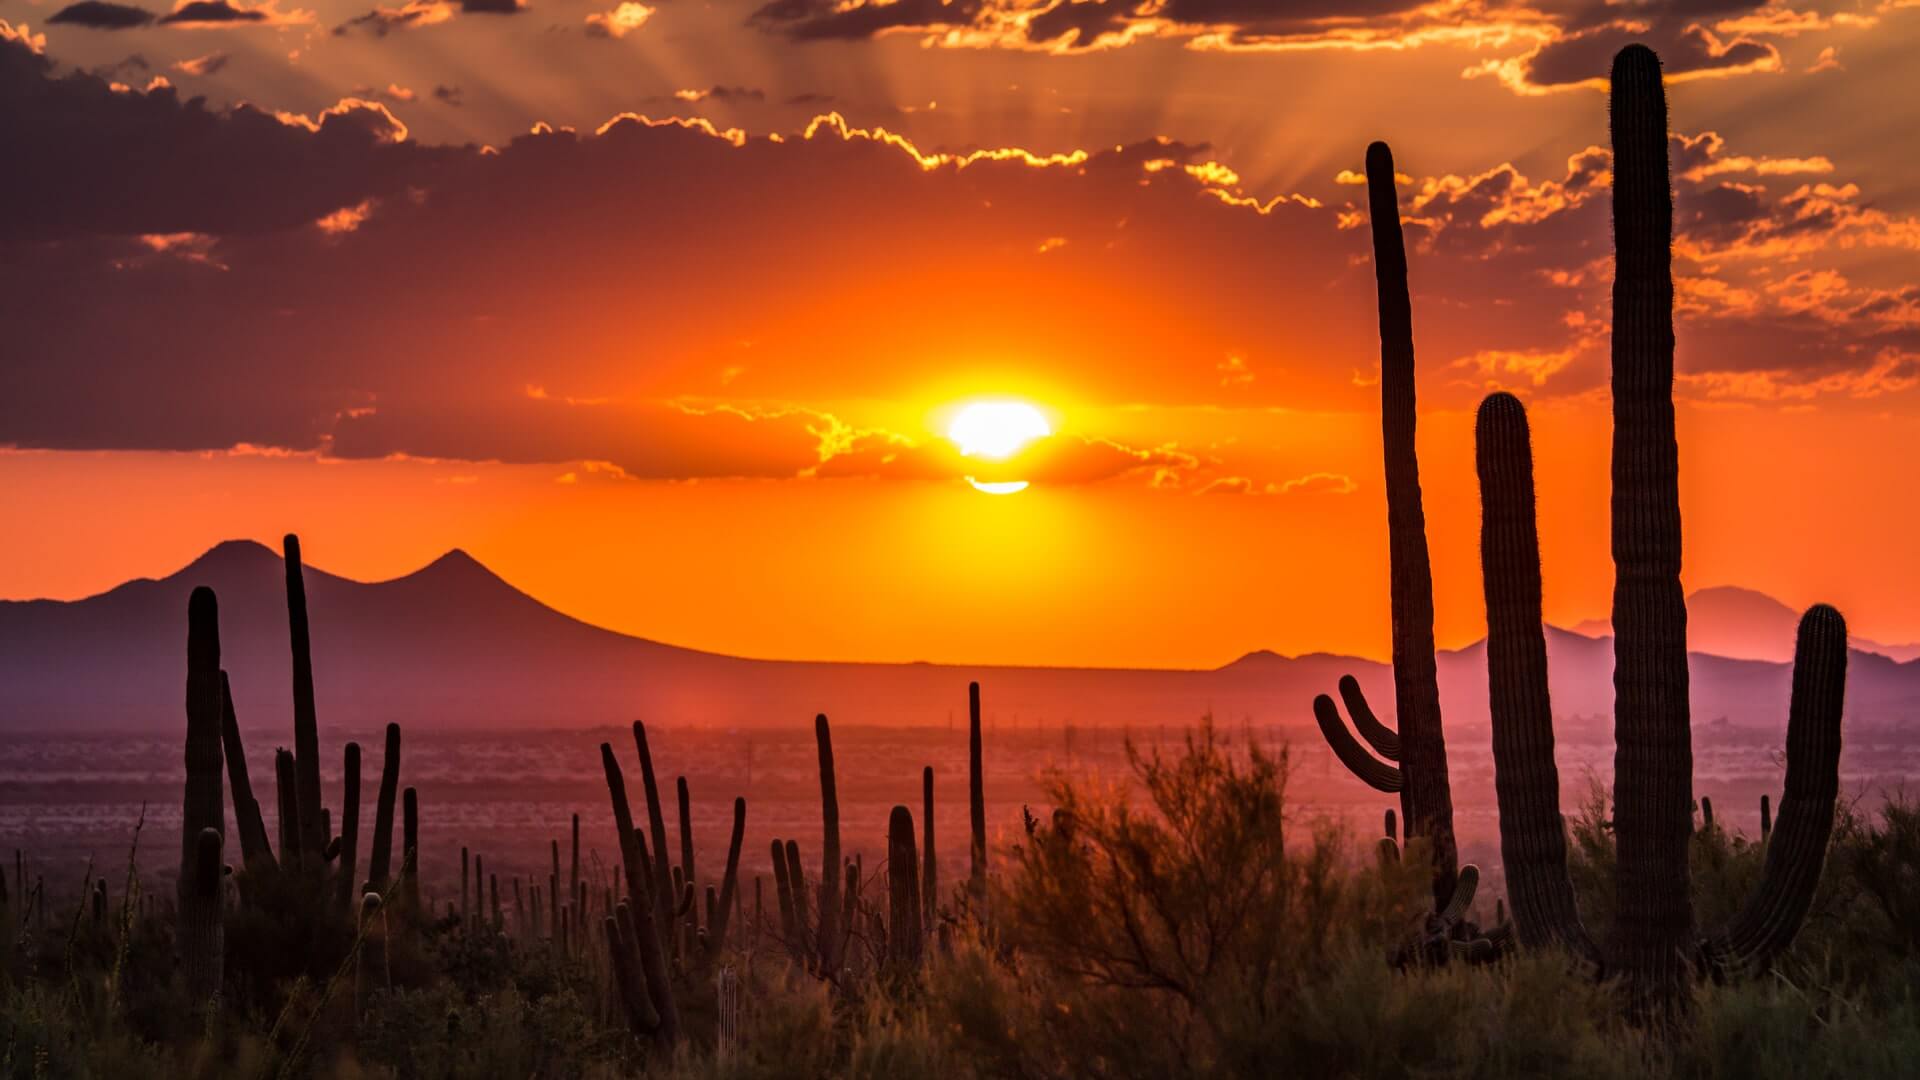 A sunset in a desert in Arizona